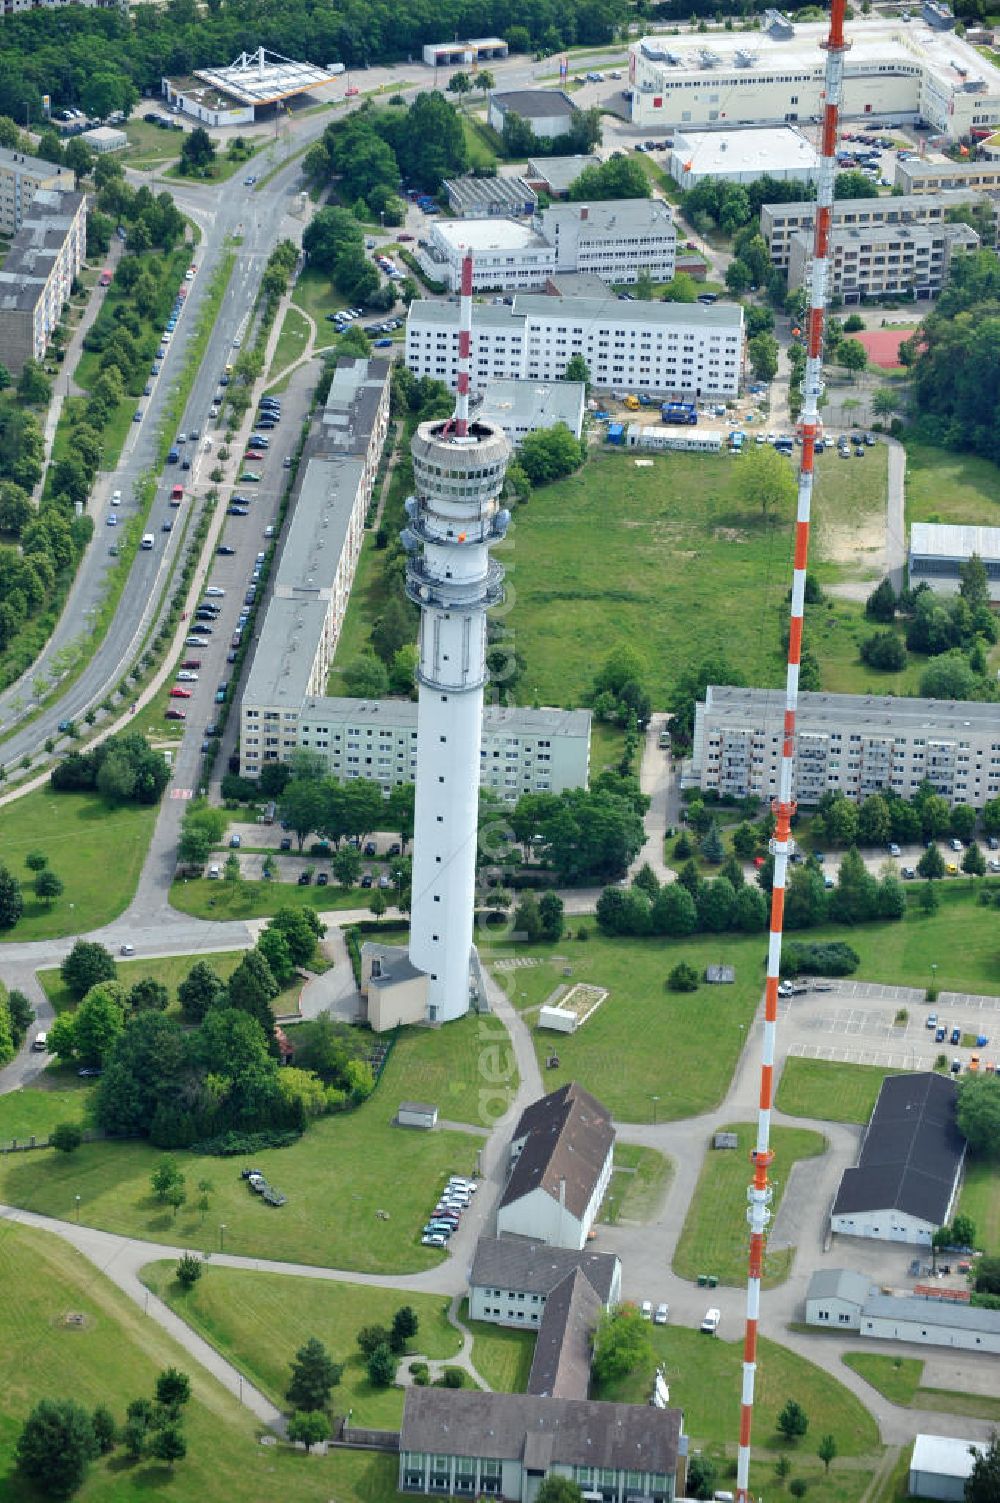 Aerial photograph Schwerin - Blick auf den Fernsehturm Schwerin Zippendorf inmitten des Wohngebietes / Plattenbaugebiet Großer Dreesch. View of the television tower in Schwerin.